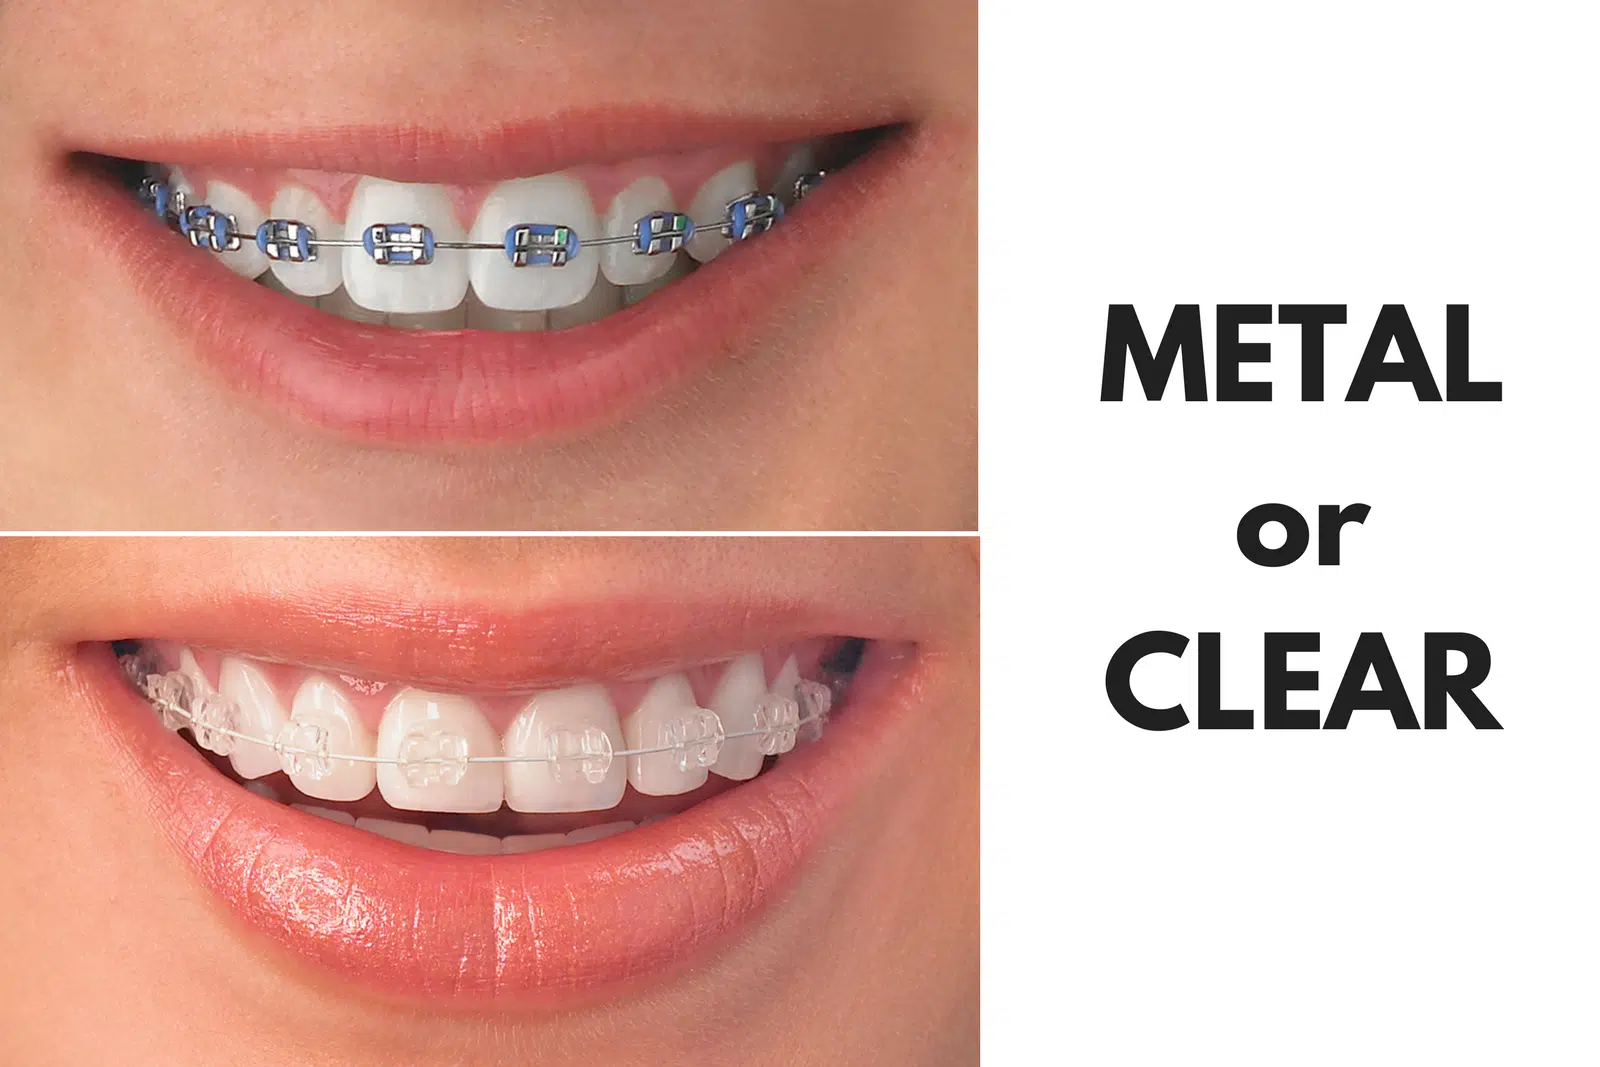 Should I Get Metal or Clear Braces? - General Dentist